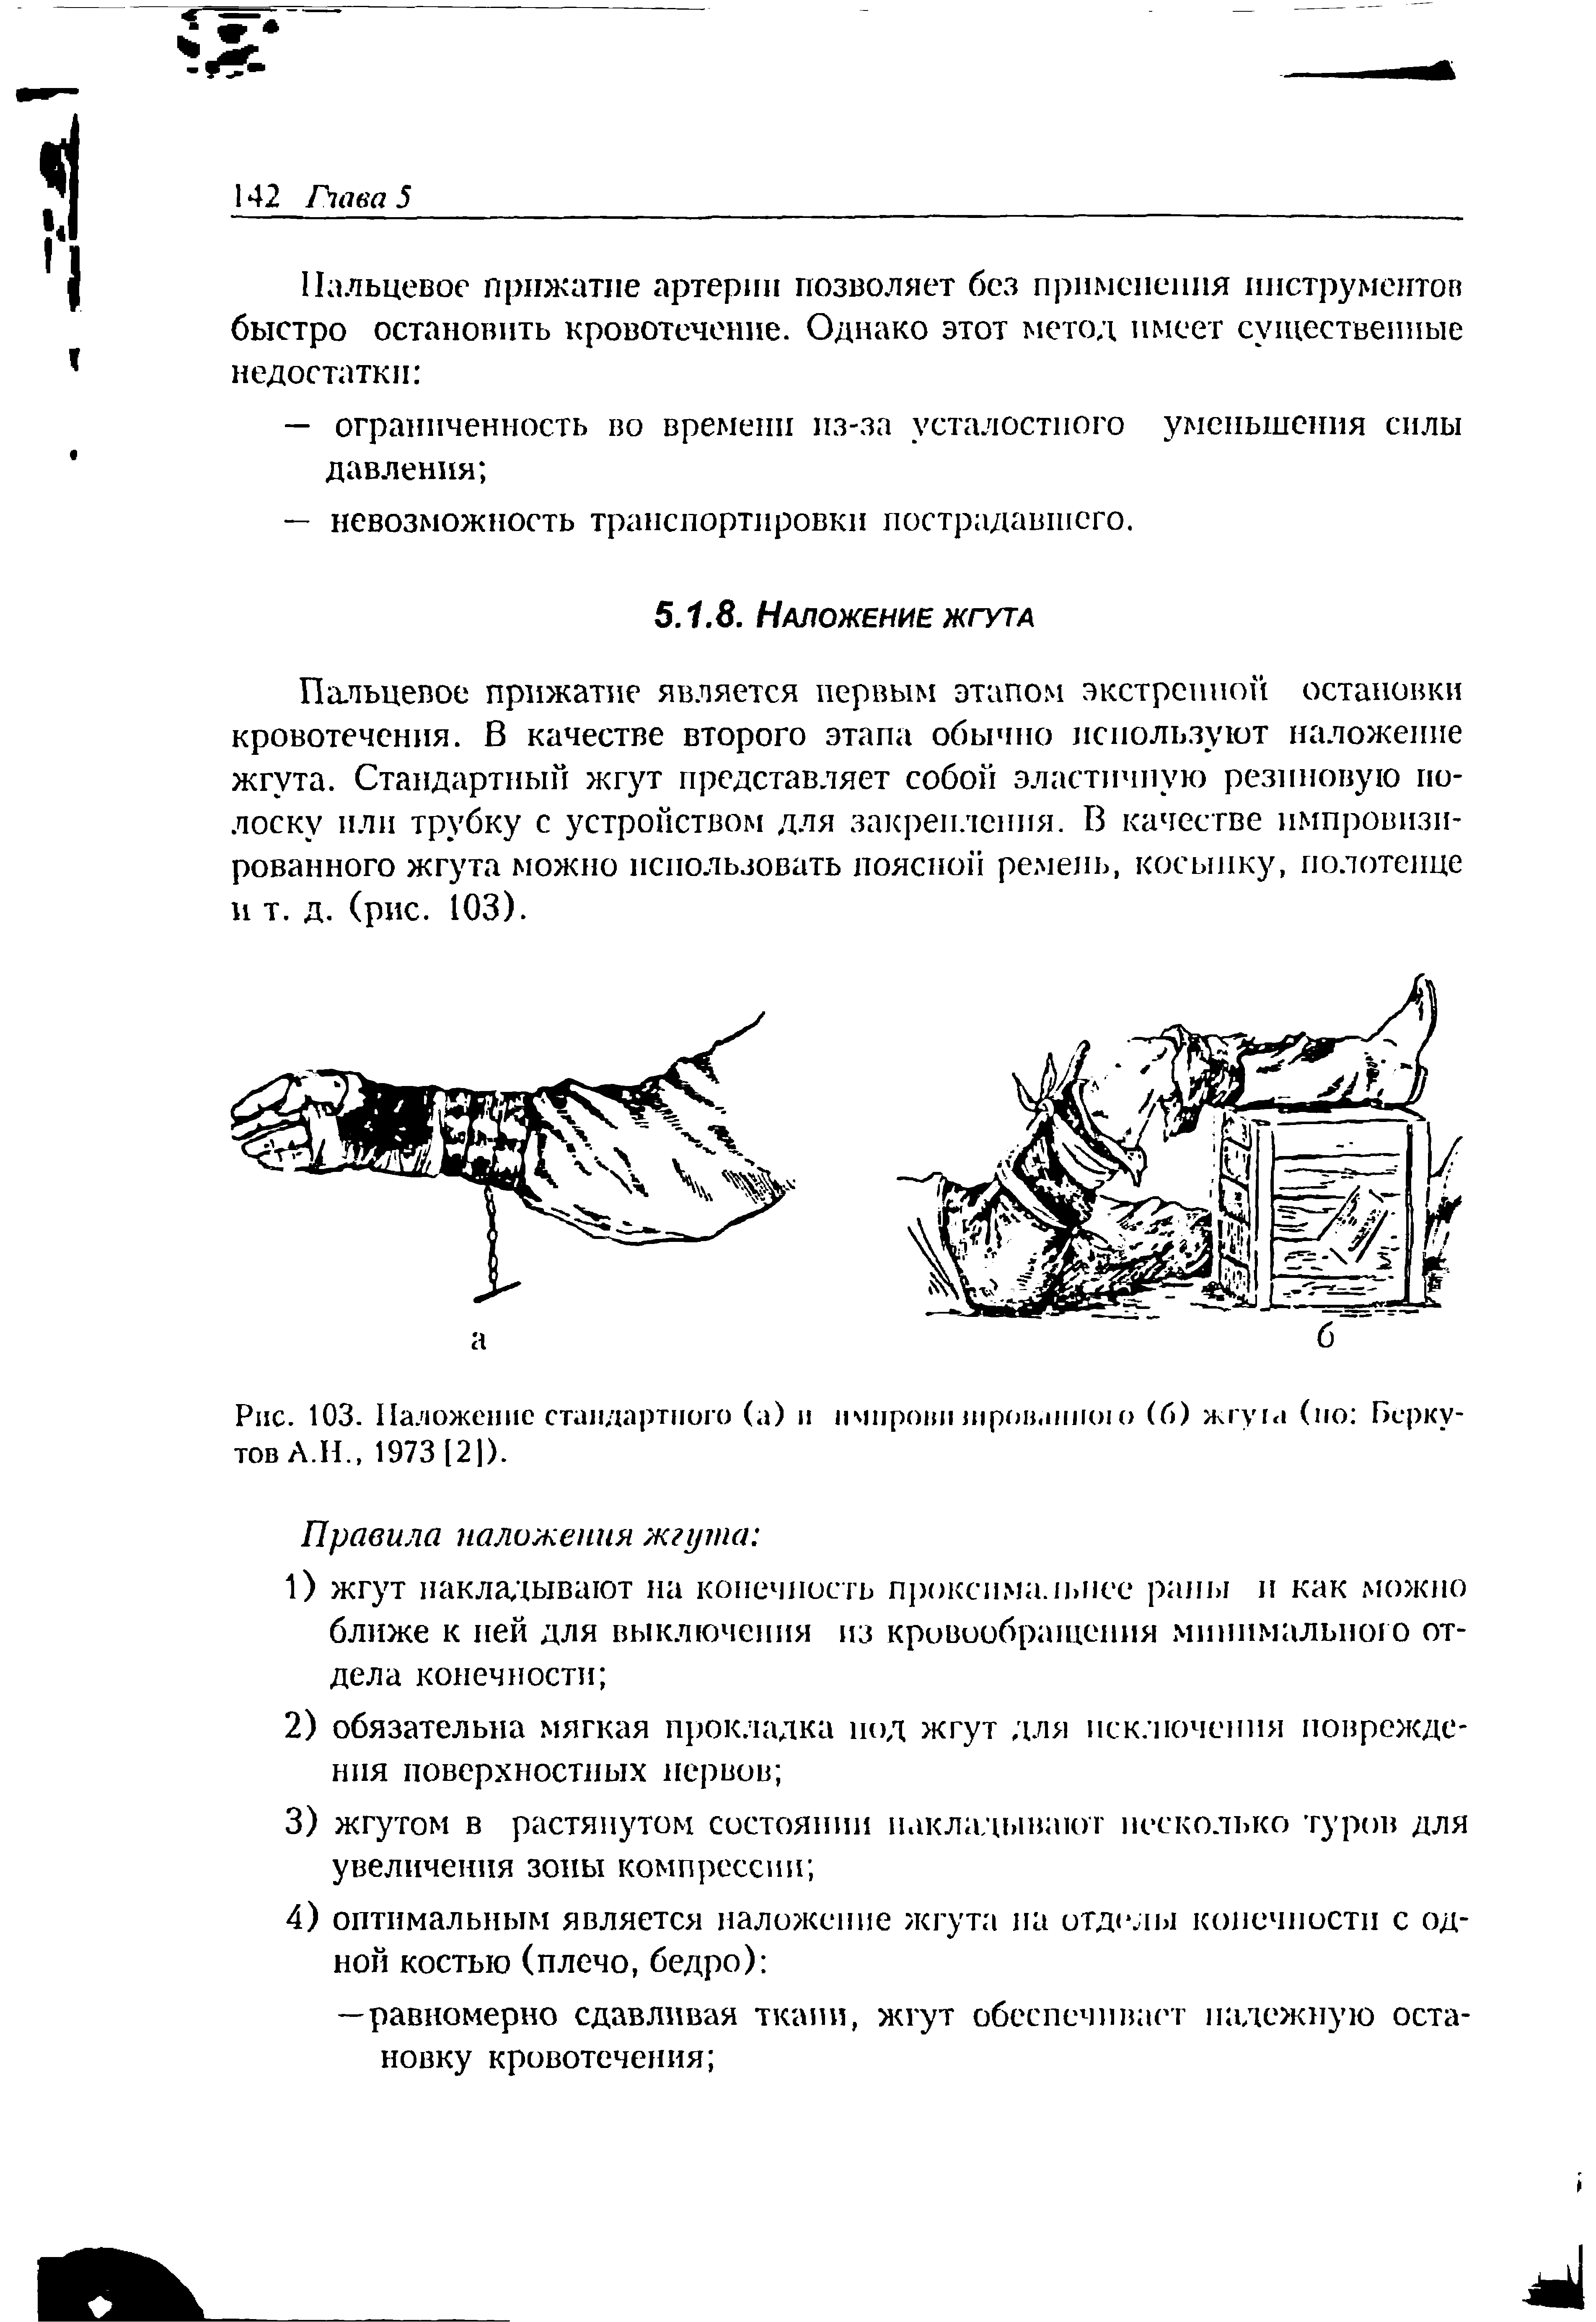 Рис. 103. Наложение стандартного (а) и нмпрови шров.шшио (б) жгу га (но Беркутов А.Н., 1973 [2]).